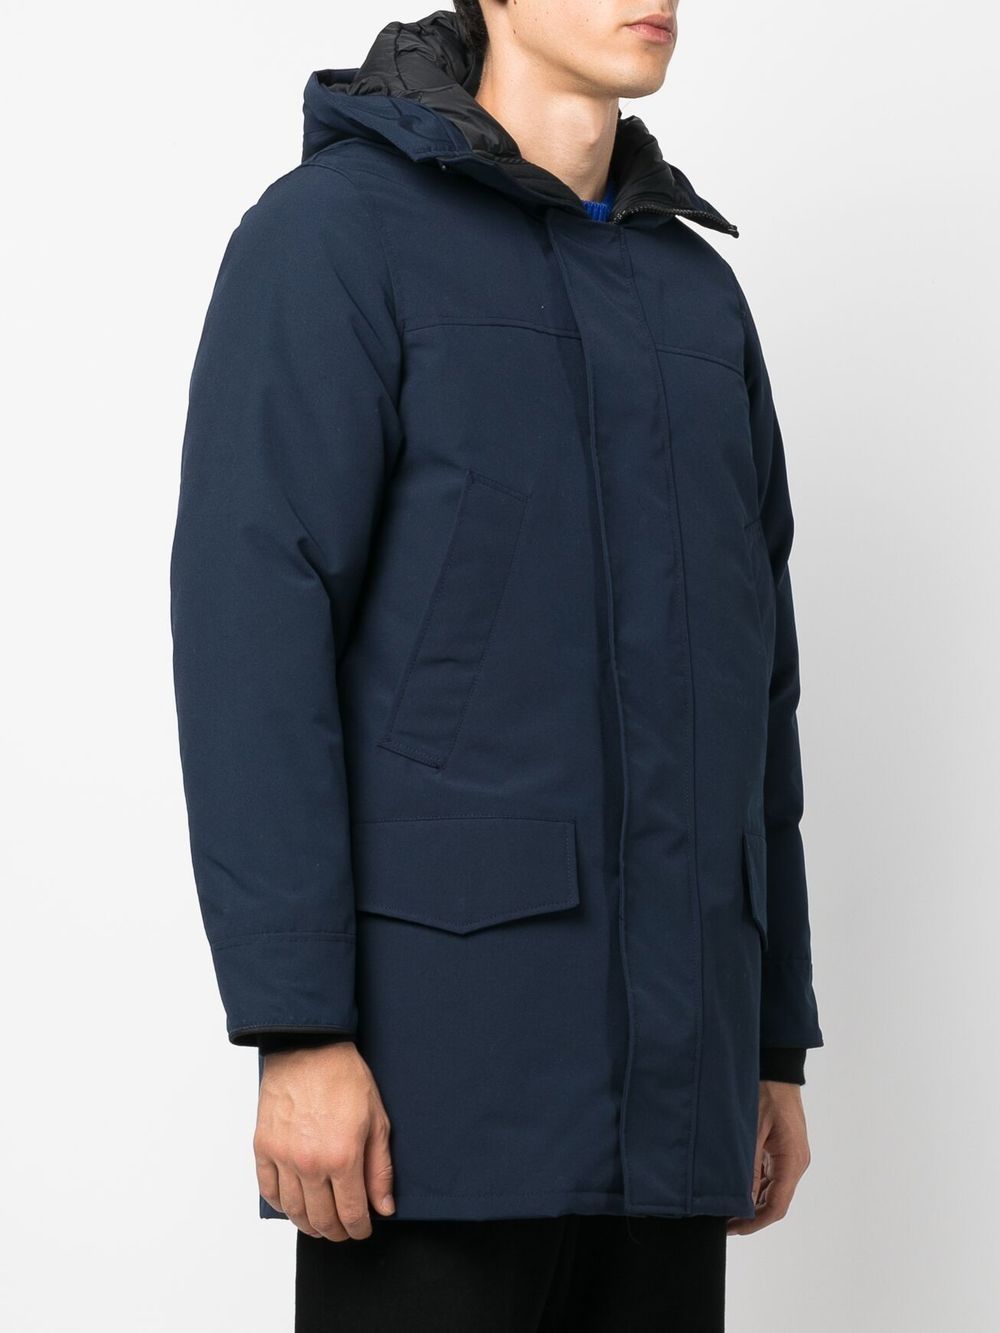 CANADA GOOSE Navy Hooded Parka Jacket for Men